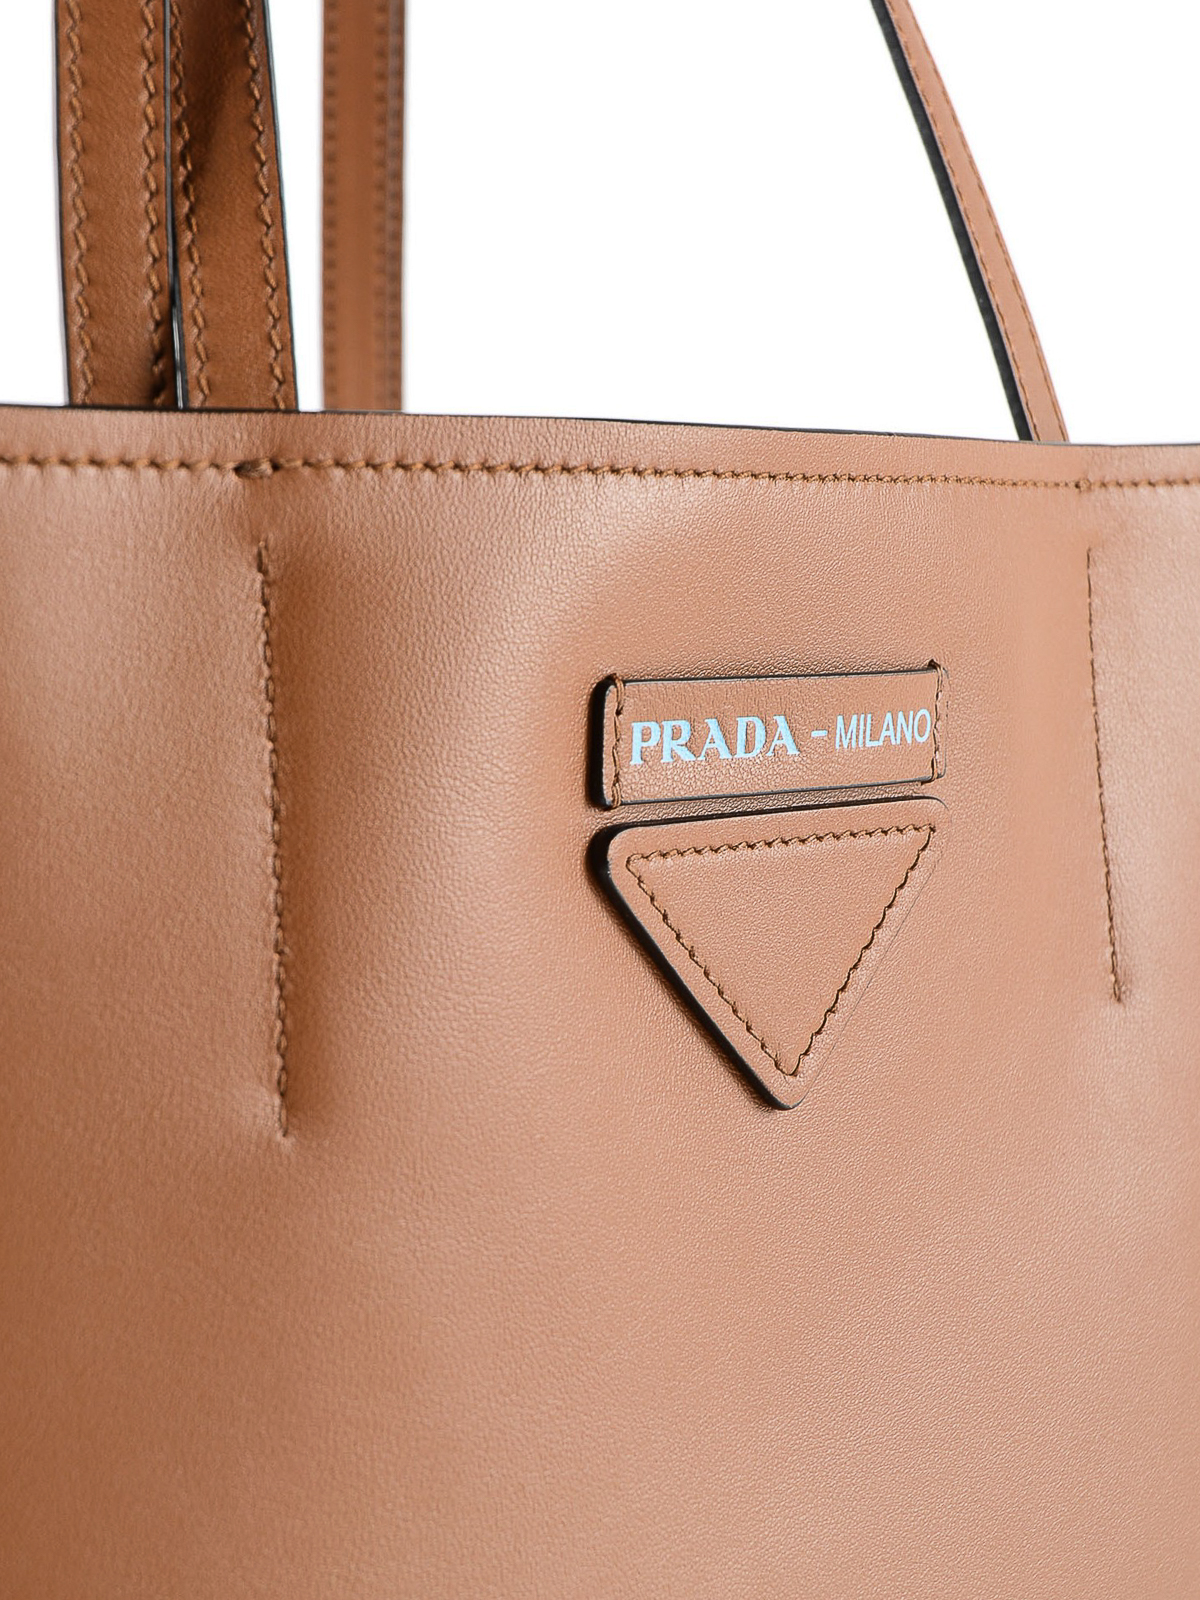 prada concept small leather tote